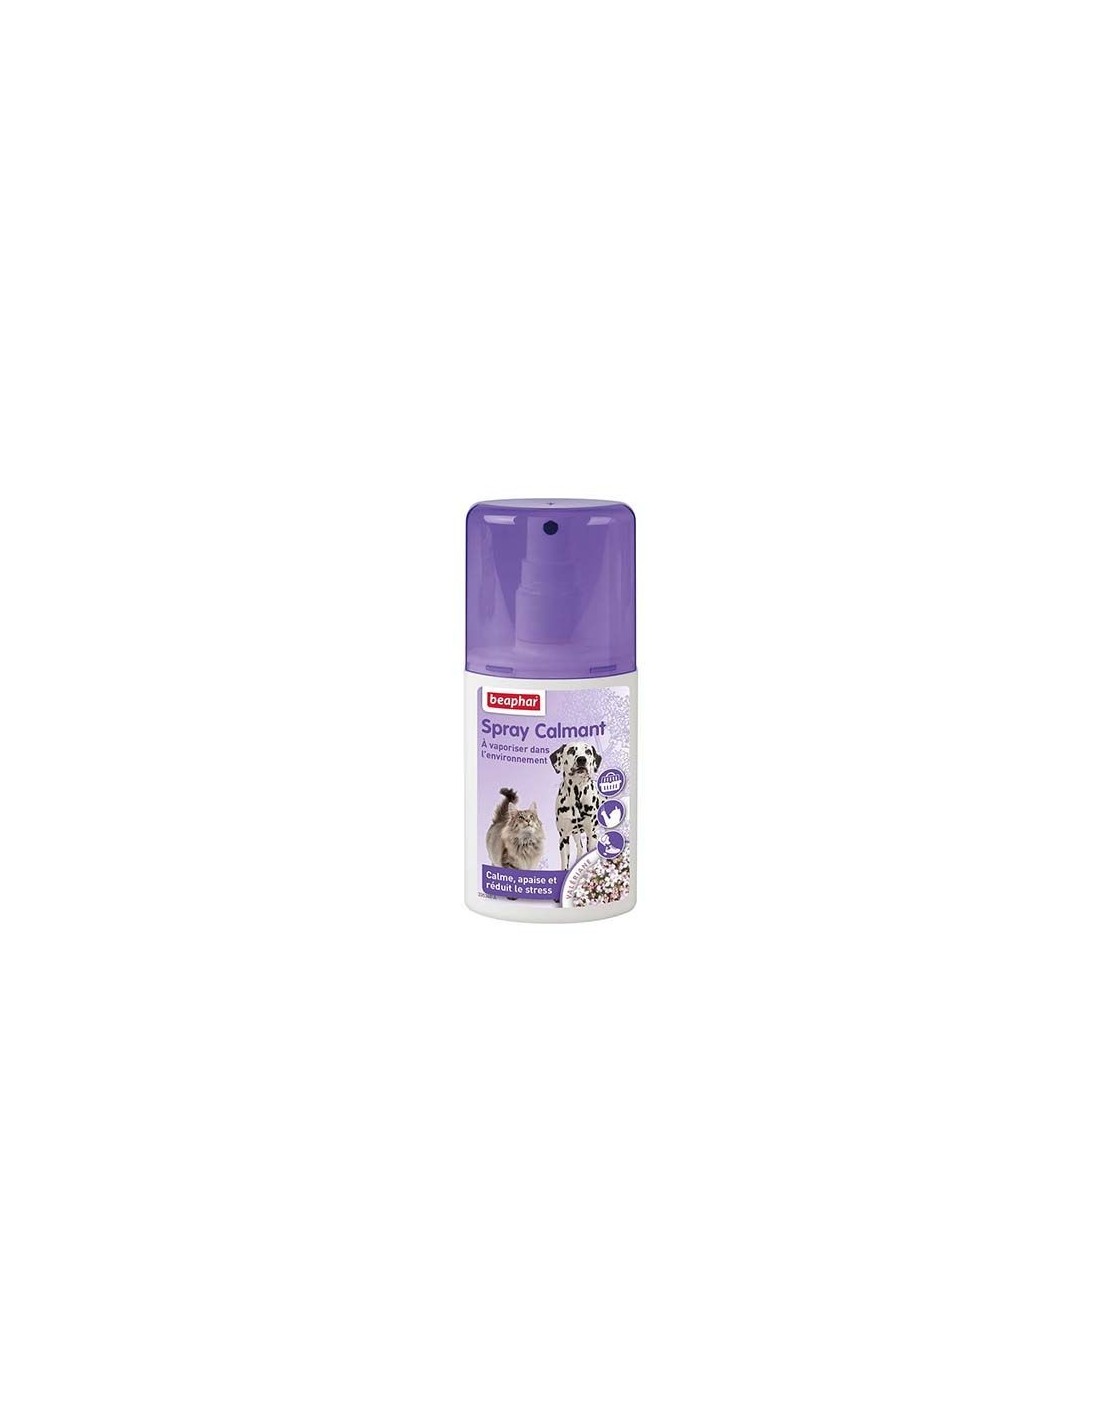 Spray calmant a la valériane chien et chat - 125 ml - Bien être